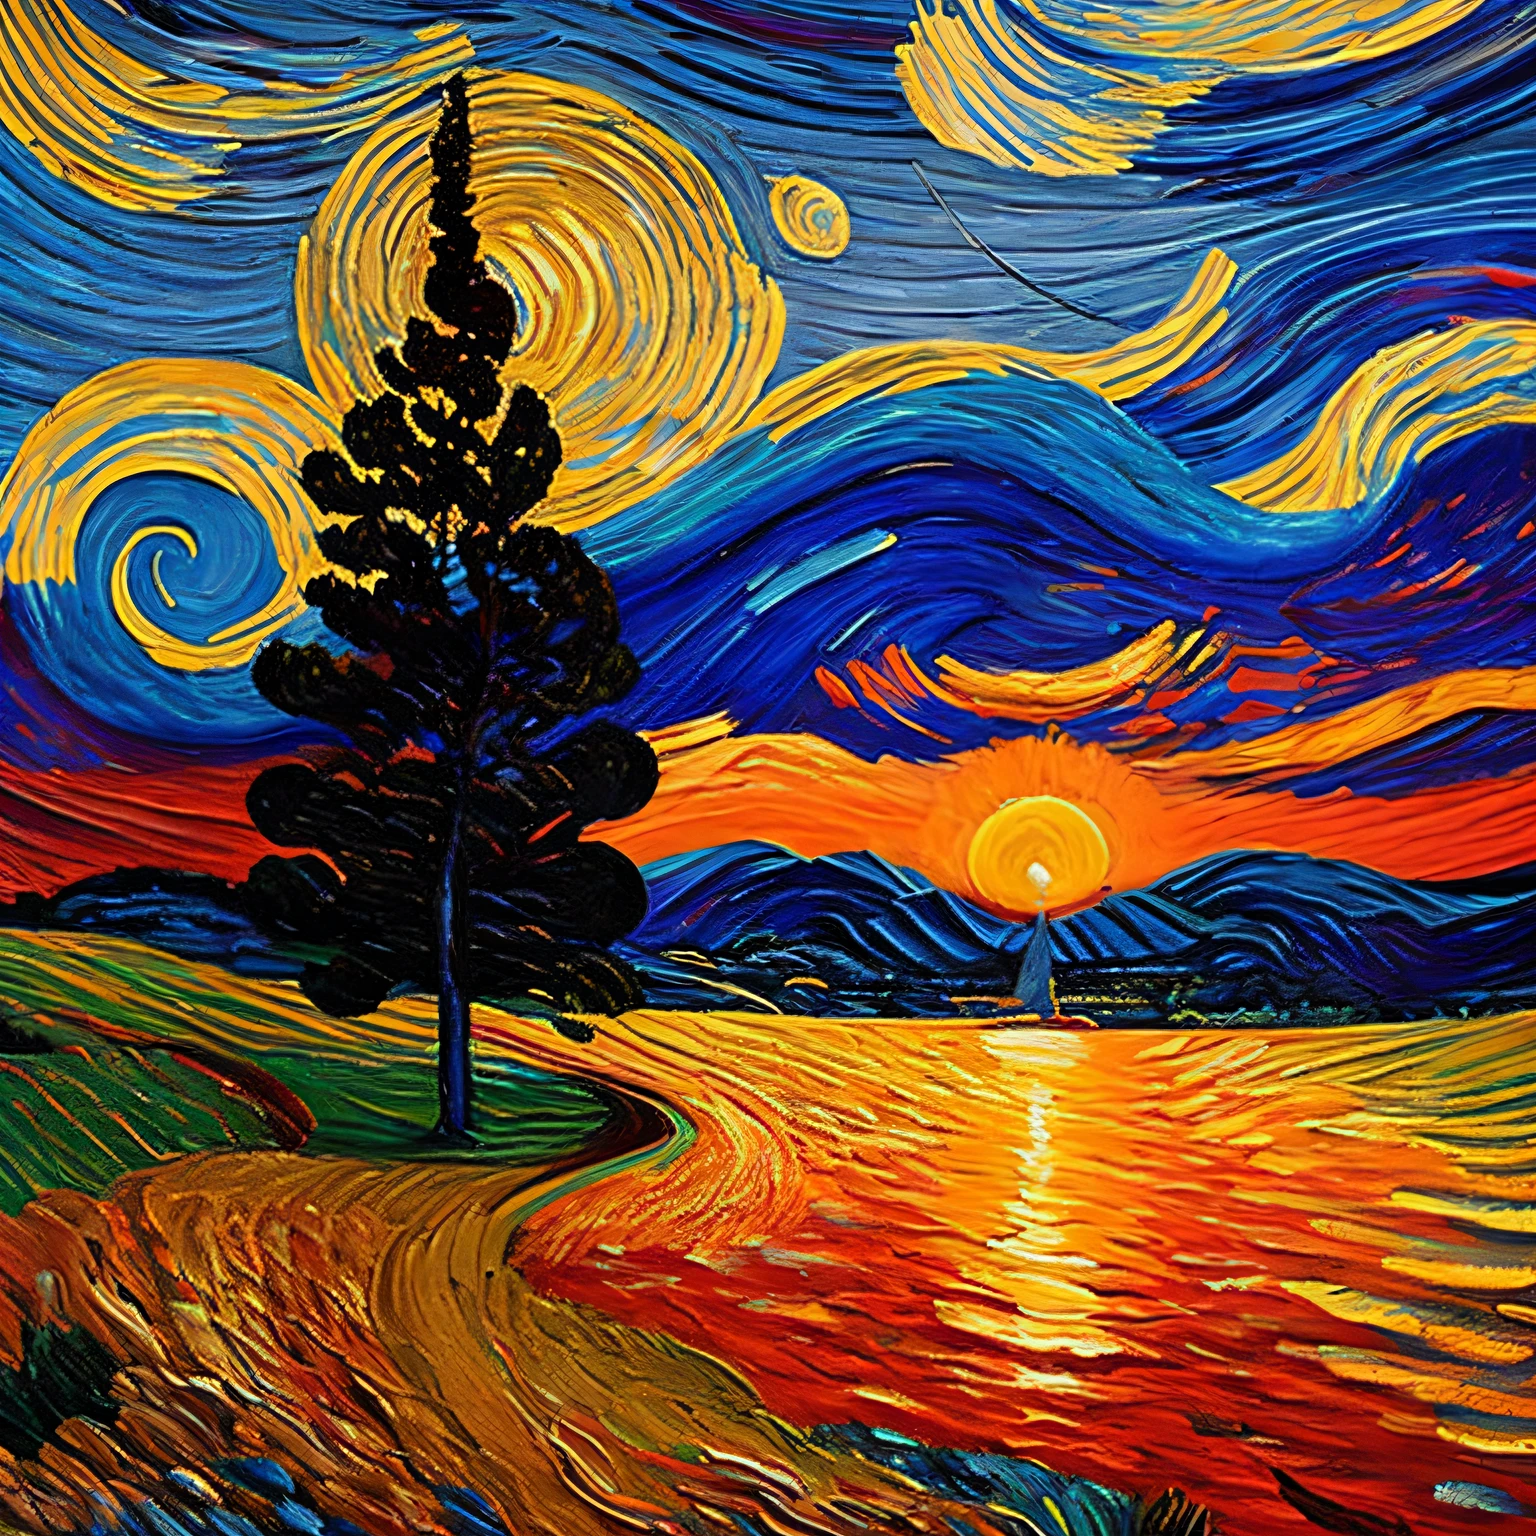 In einer Welt, die durch die Striche von Van Gogh neu erdacht wurde, die vertrauten Wirbel und Strudel von "sternenklare Nacht" eine atemberaubende Transformation durchmachen. Statt der ruhigen Blau- und leuchtenden Gelbtöne, die einen Nachthimmel darstellen, eine lebendige Palette aus tiefen Orangetönen, feurige Rottöne, und sanfte Purpurtöne bemalen die Leinwand. Die Szene fängt den brillanten und flüchtigen Moment einer untergehenden Sonne ein.

Die himmlischen Wirbel, einst voller funkelnder Sterne, jetzt wiege die untergehende Sonne, seine feurige Kugel senkt sich langsam, Sie strahlt einen strahlenden Schein aus, der mit den umgebenden Farbwirbeln tanzt und sich vermischt. Die Zypressen, noch immer in ihren dunklen Silhouetten nach oben strebend, scheinen sich noch weiter auszudehnen, als ob sie versuchen würden, die letzten Reste des Tageslichts festzuhalten.

In der Stadt unten, Das Warme, Das bernsteinfarbene Licht des Sonnenuntergangs taucht die malerischen Gebäude in, wirft längliche Schatten und verwandelt die Stadt in eine Oase goldener Farbtöne. Der Kirchturm, ein einst einsamer Wächter gegen die Nacht, now stands outlined by the sun's Hingabeate embrace, seine Struktur nimmt eine weiche, fast ätherische Qualität.

Jeder Pinselstrich, mit seiner lebendigen Intensität, vermittelt die emotionale Reaktion des Künstlers auf diesen Alltag, doch wunderbares Schauspiel. Das ist nicht nur ein Sonnenuntergang; es ist Van Goghs Sonnenuntergang, ein wirbelndes Meisterwerk der Wärme, Hingabe, und ein flüchtiger Moment in der Zeit, Für immer auf Leinwand festgehalten.